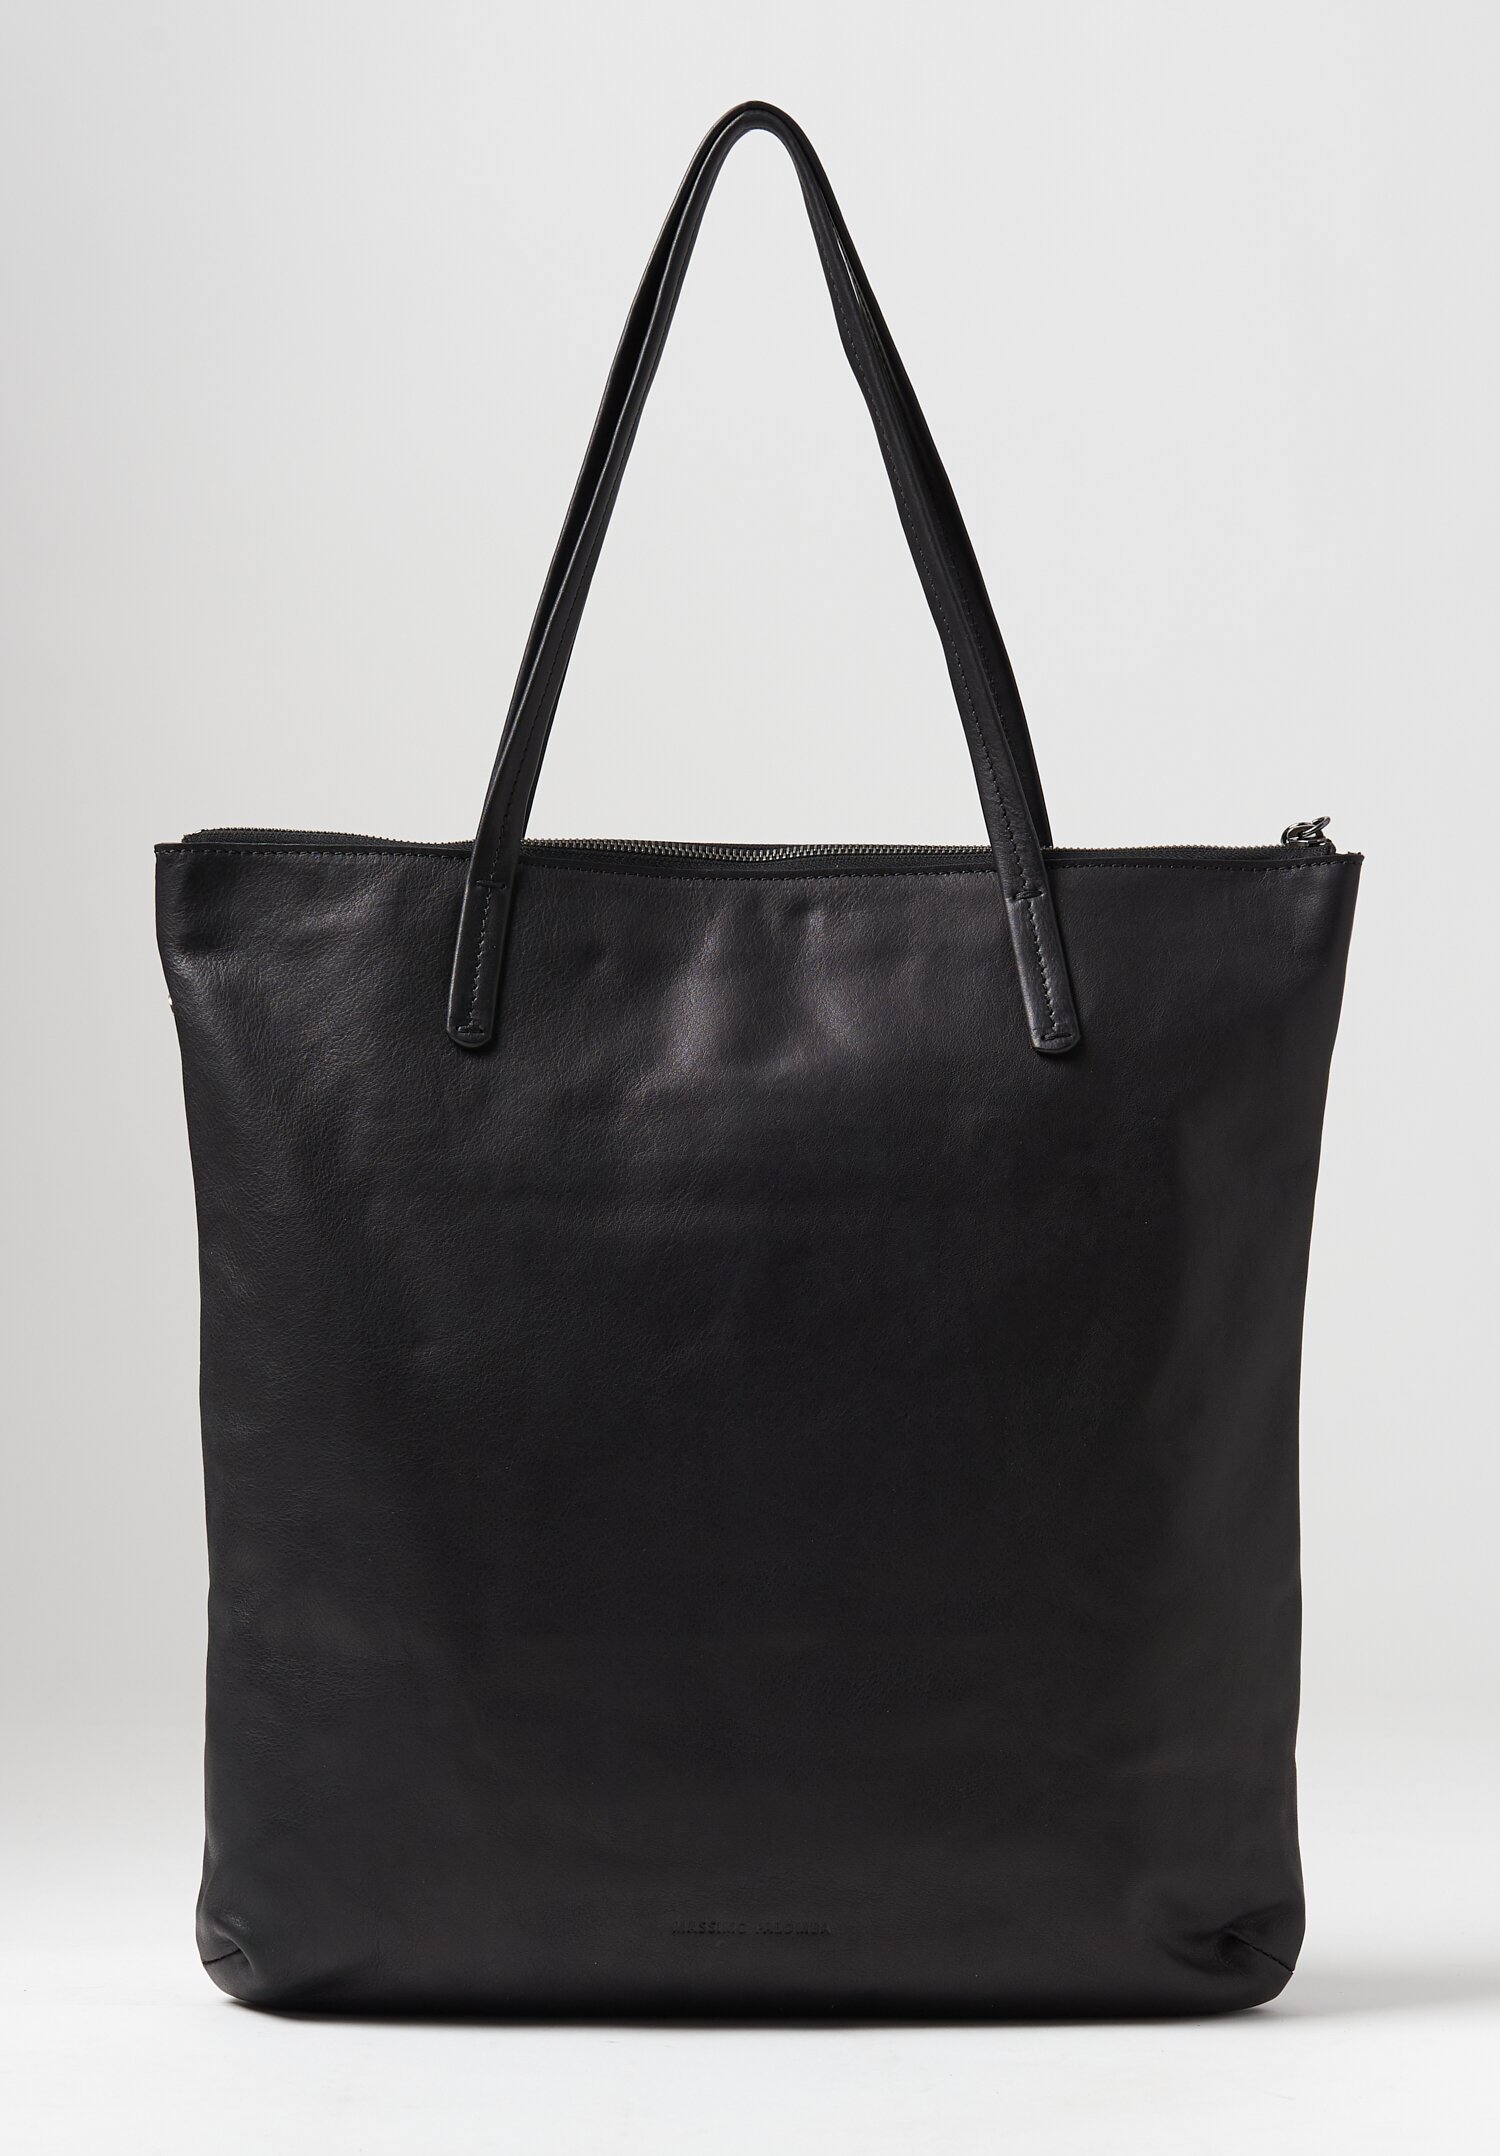 Massimo Palomba Marlena London Tote Bag in Black | Santa Fe Dry Goods ...